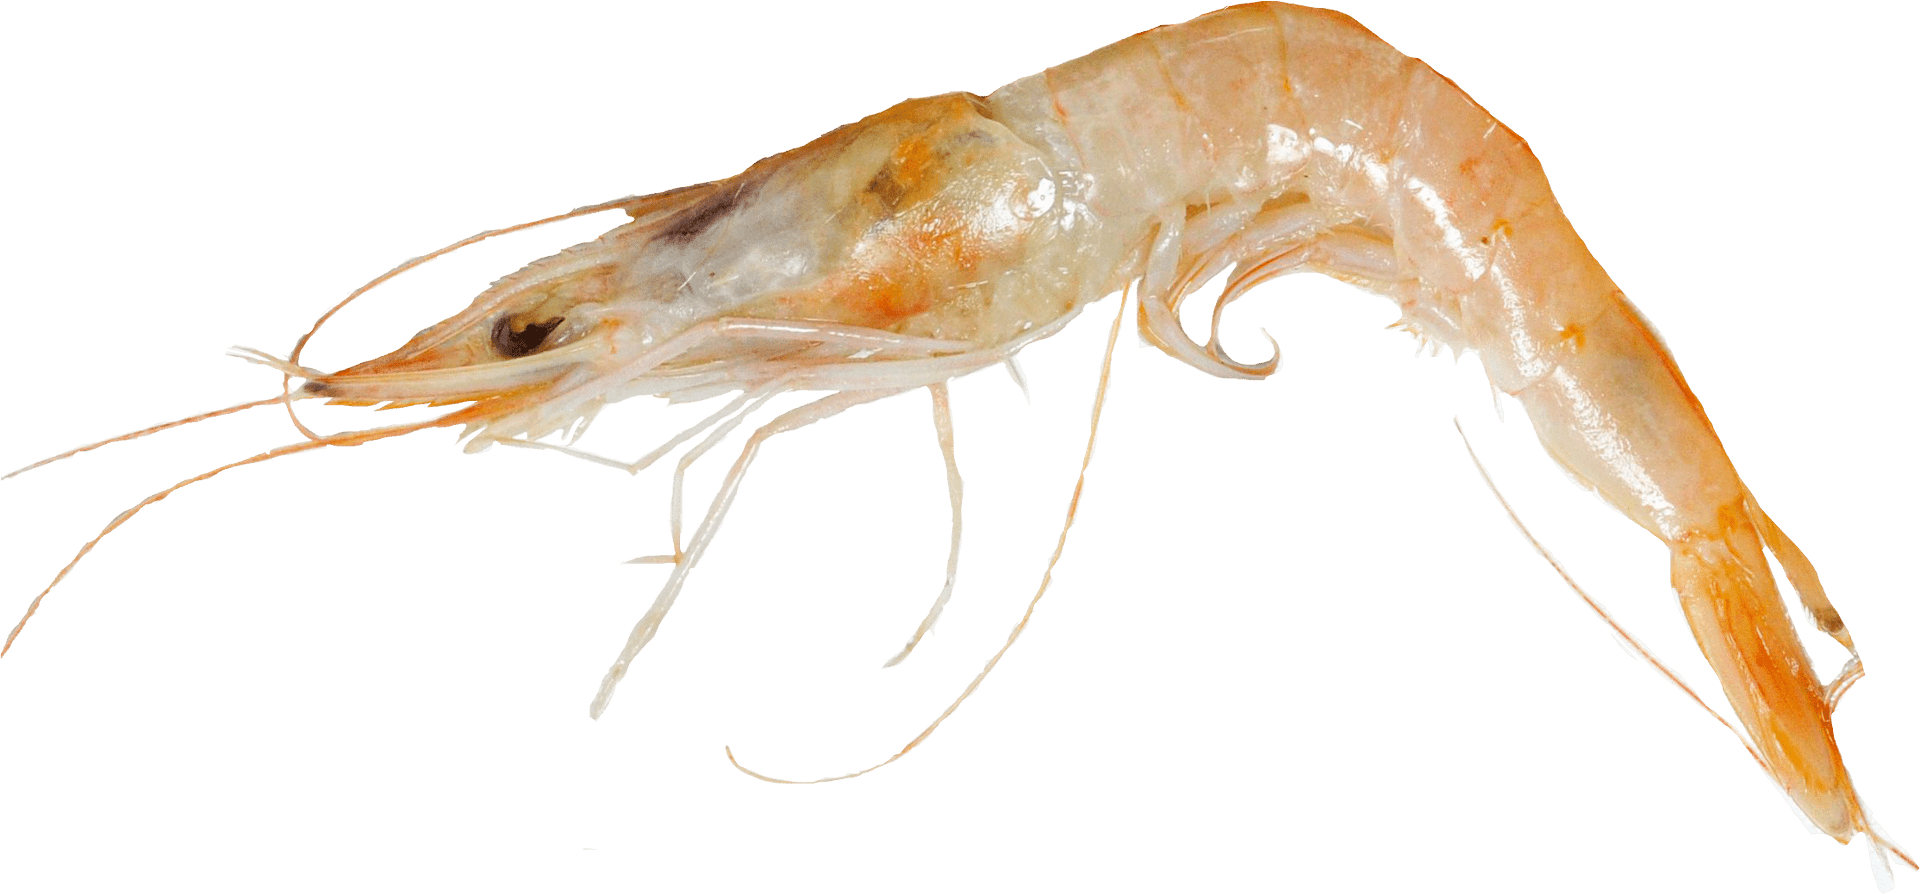 Single Cooked Shrimp Transparent Background PNG